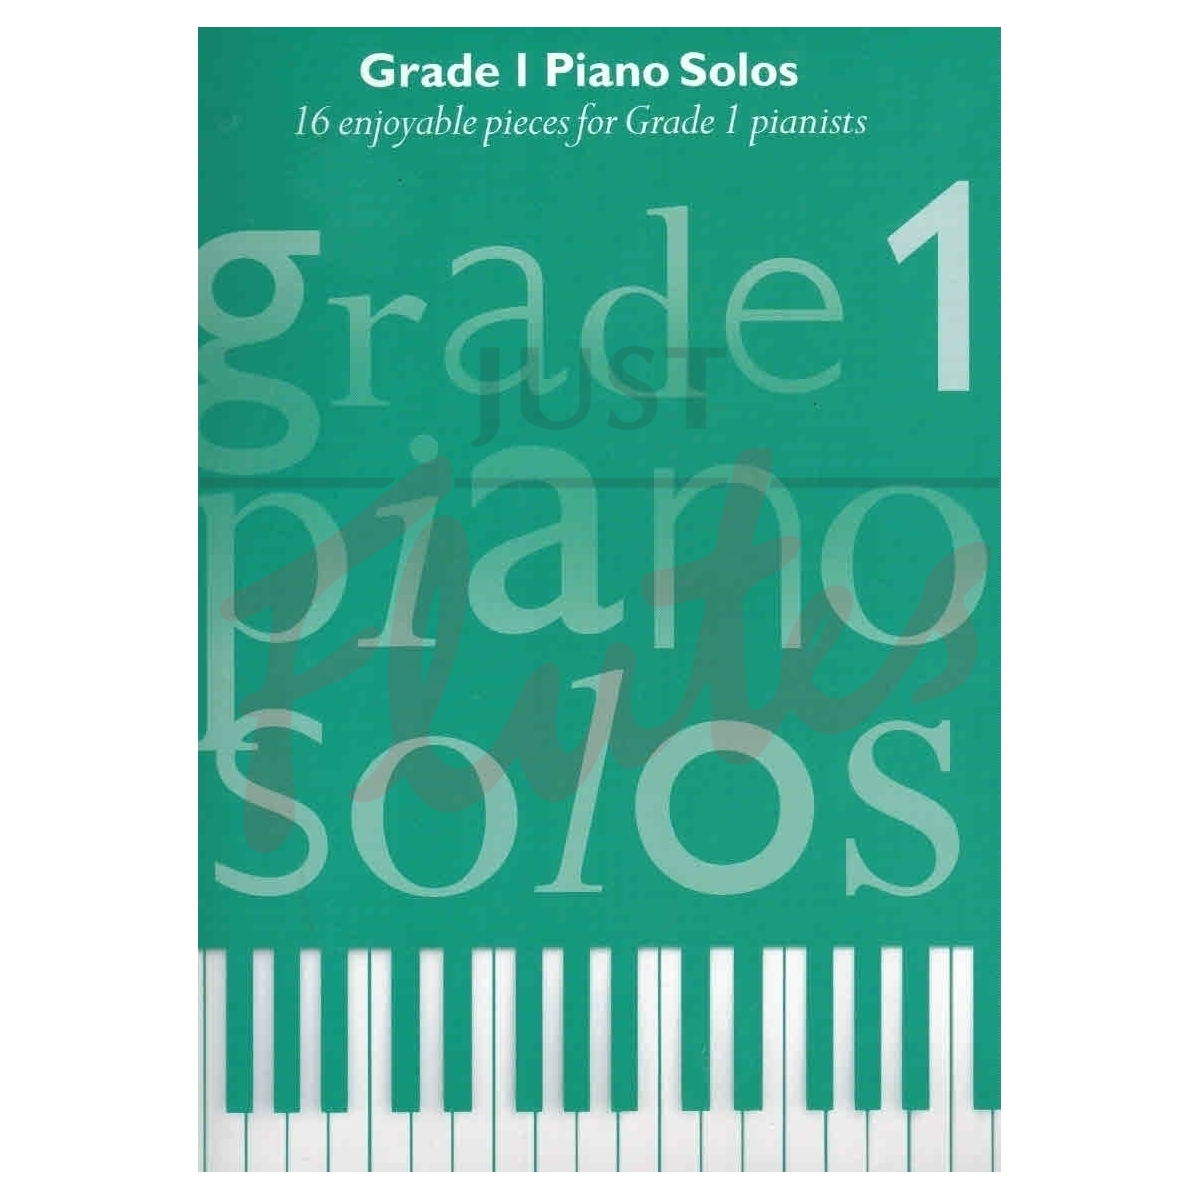 Grade 1 Piano Solos